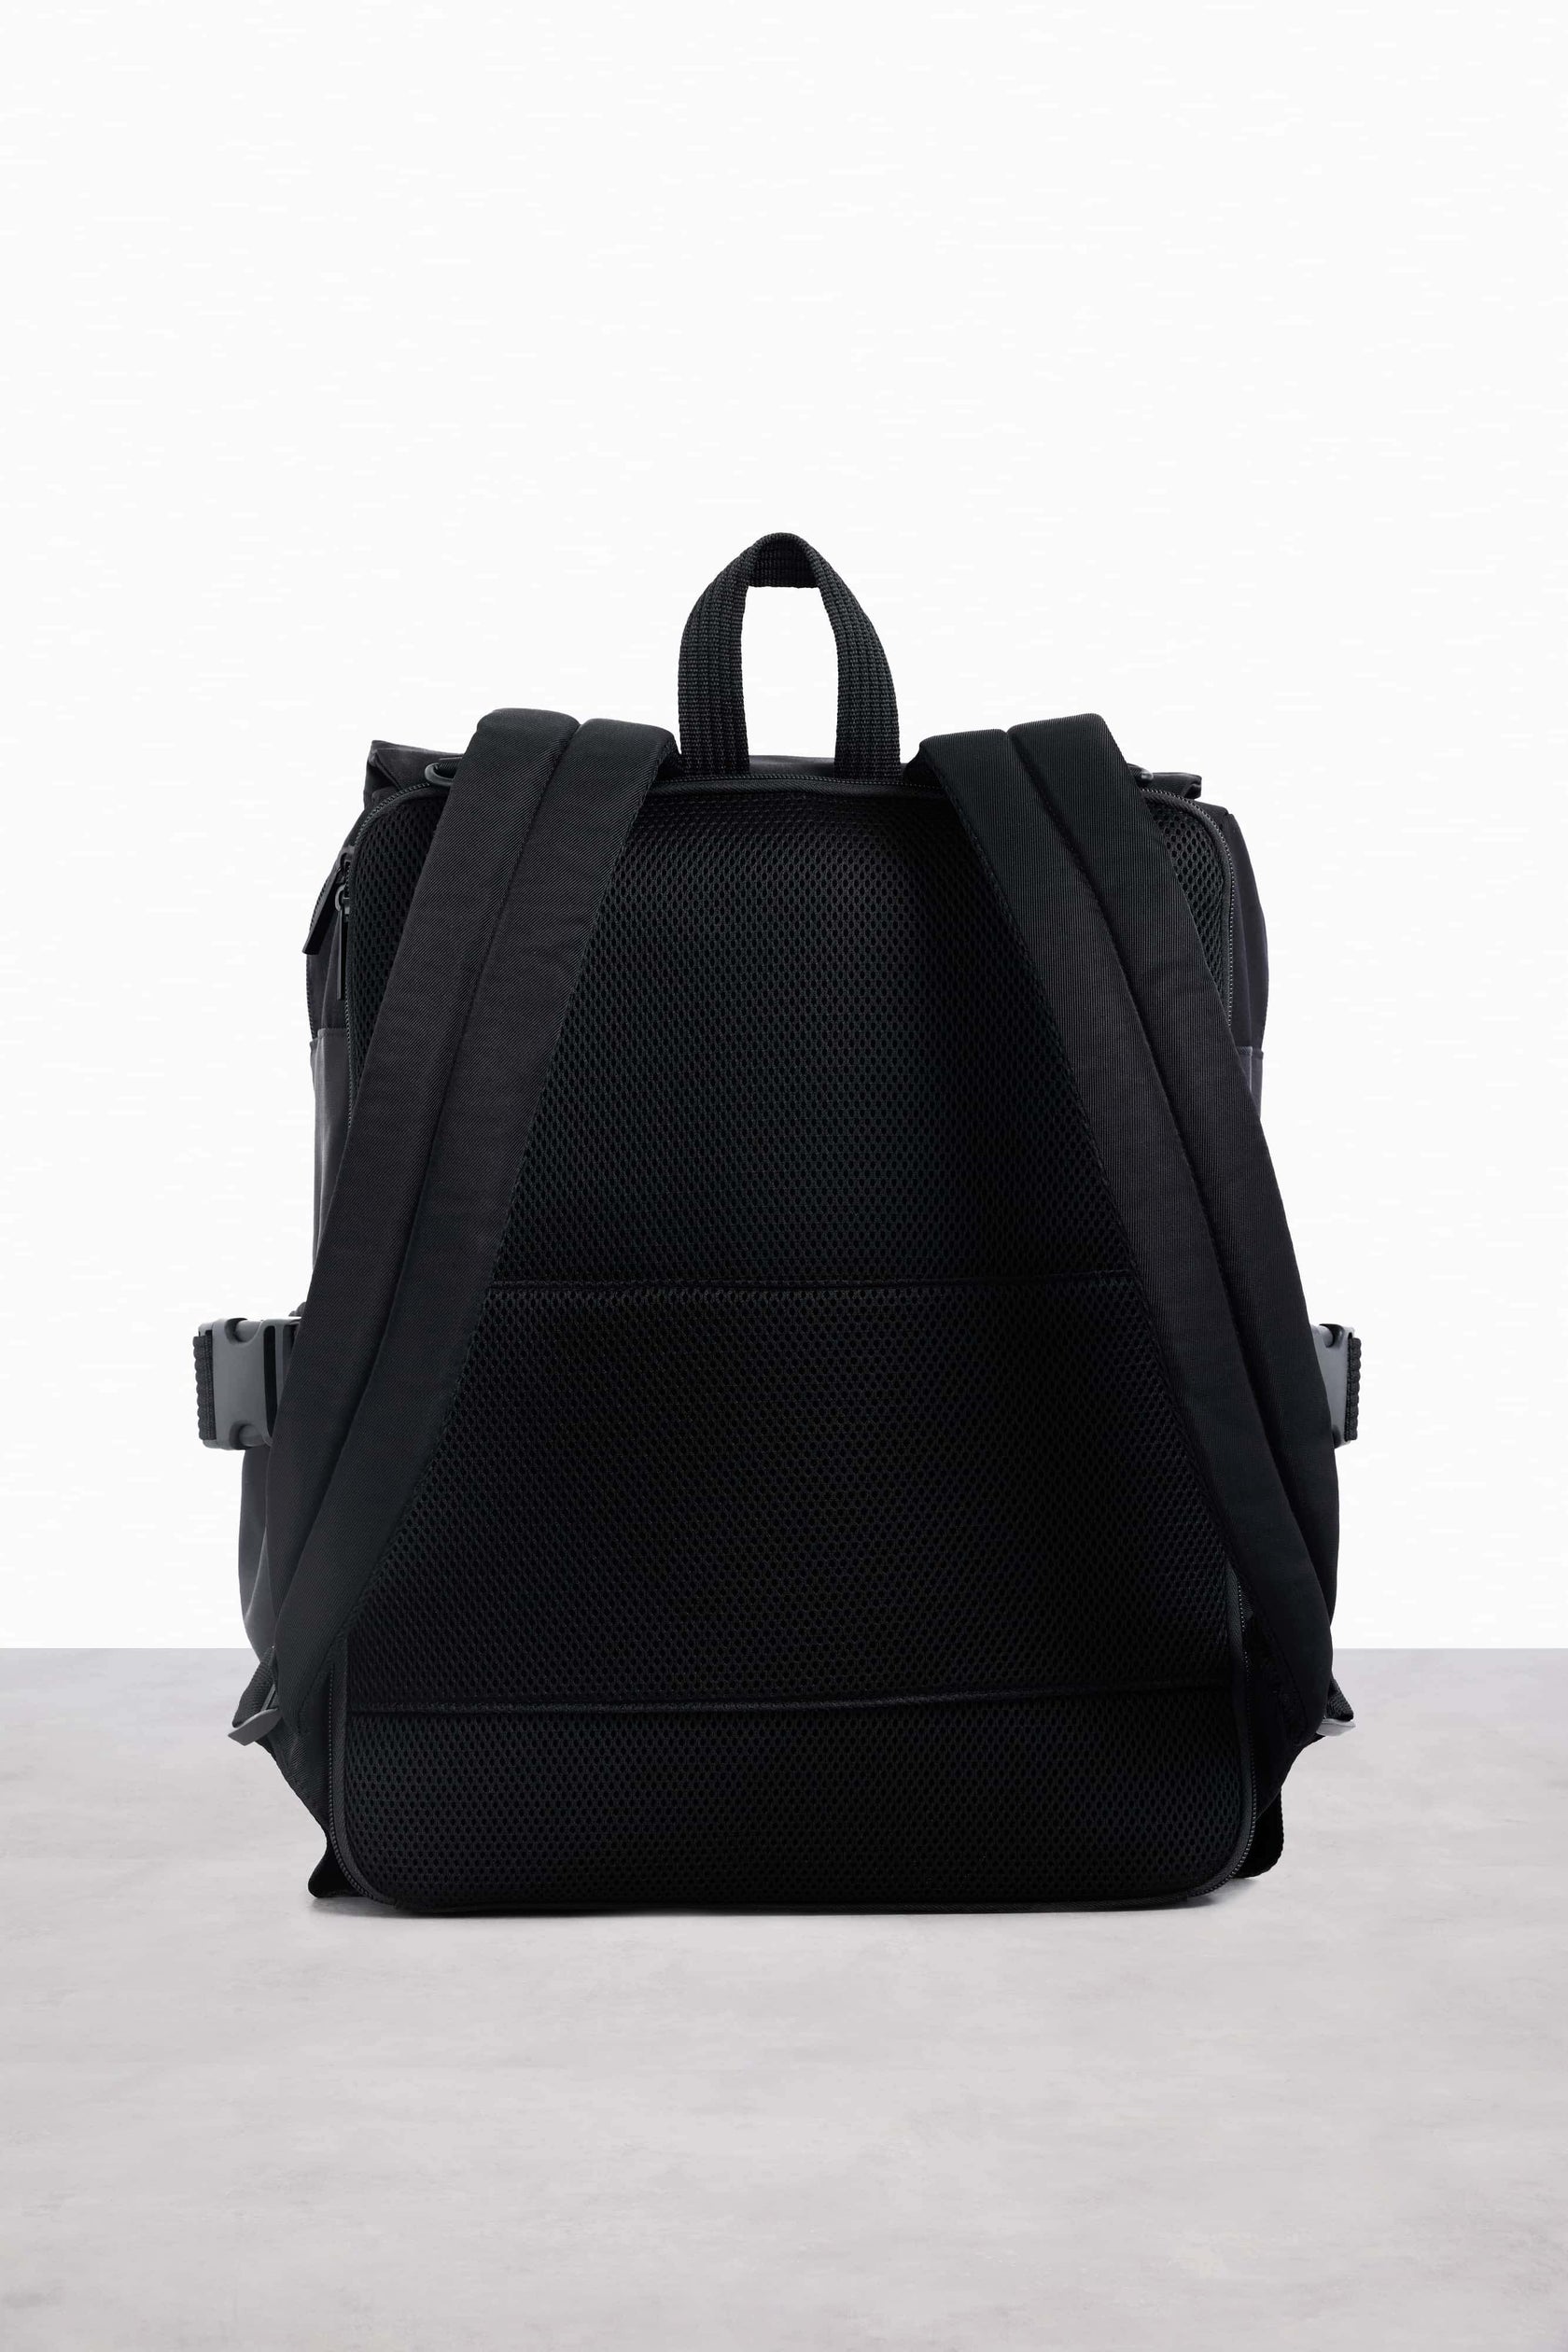 BÉIS 'The Ultimate Diaper Backpack' in Black - Diaper Bag & Diaper Backpack